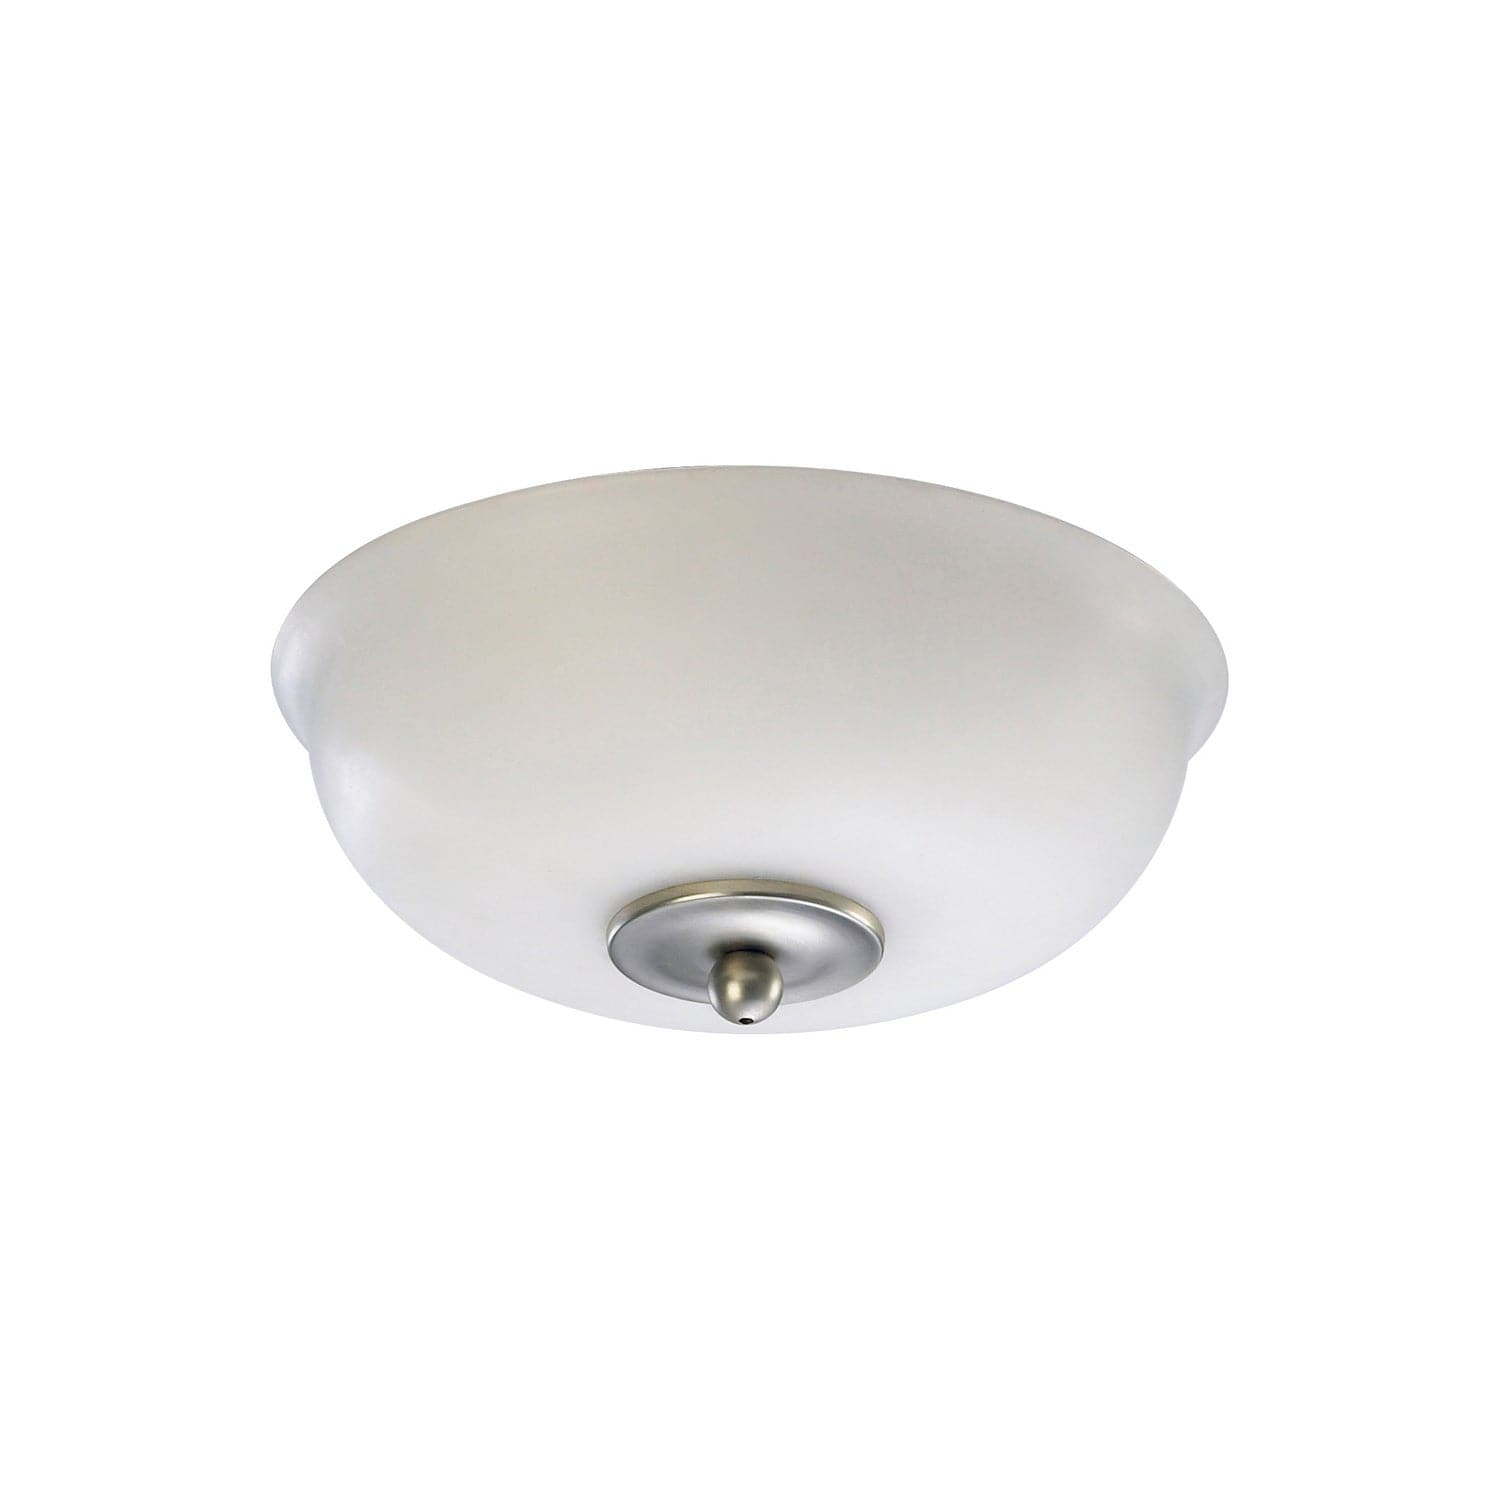 Quorum - 1032-9165 - LED Fan Light Kit - 1032 Light Kits - Satin Nickel